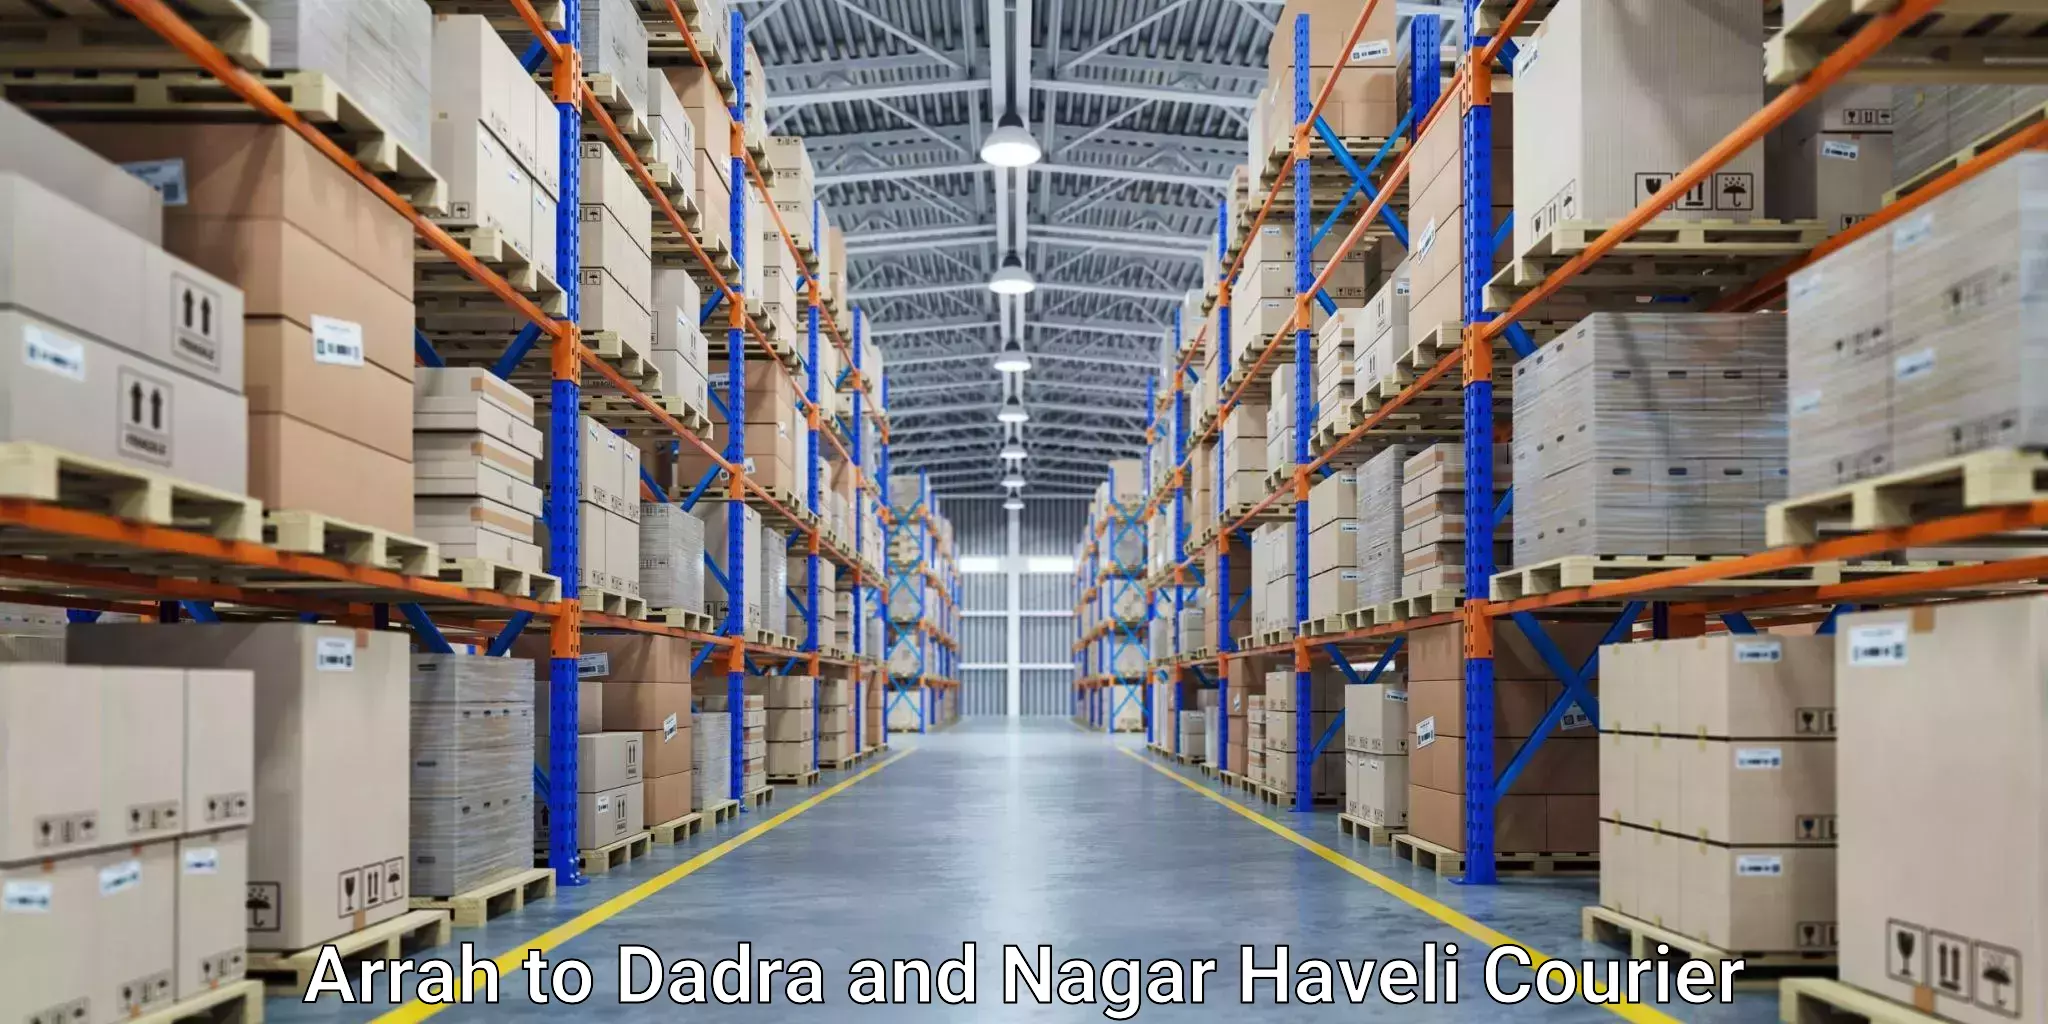 Logistics management Arrah to Dadra and Nagar Haveli